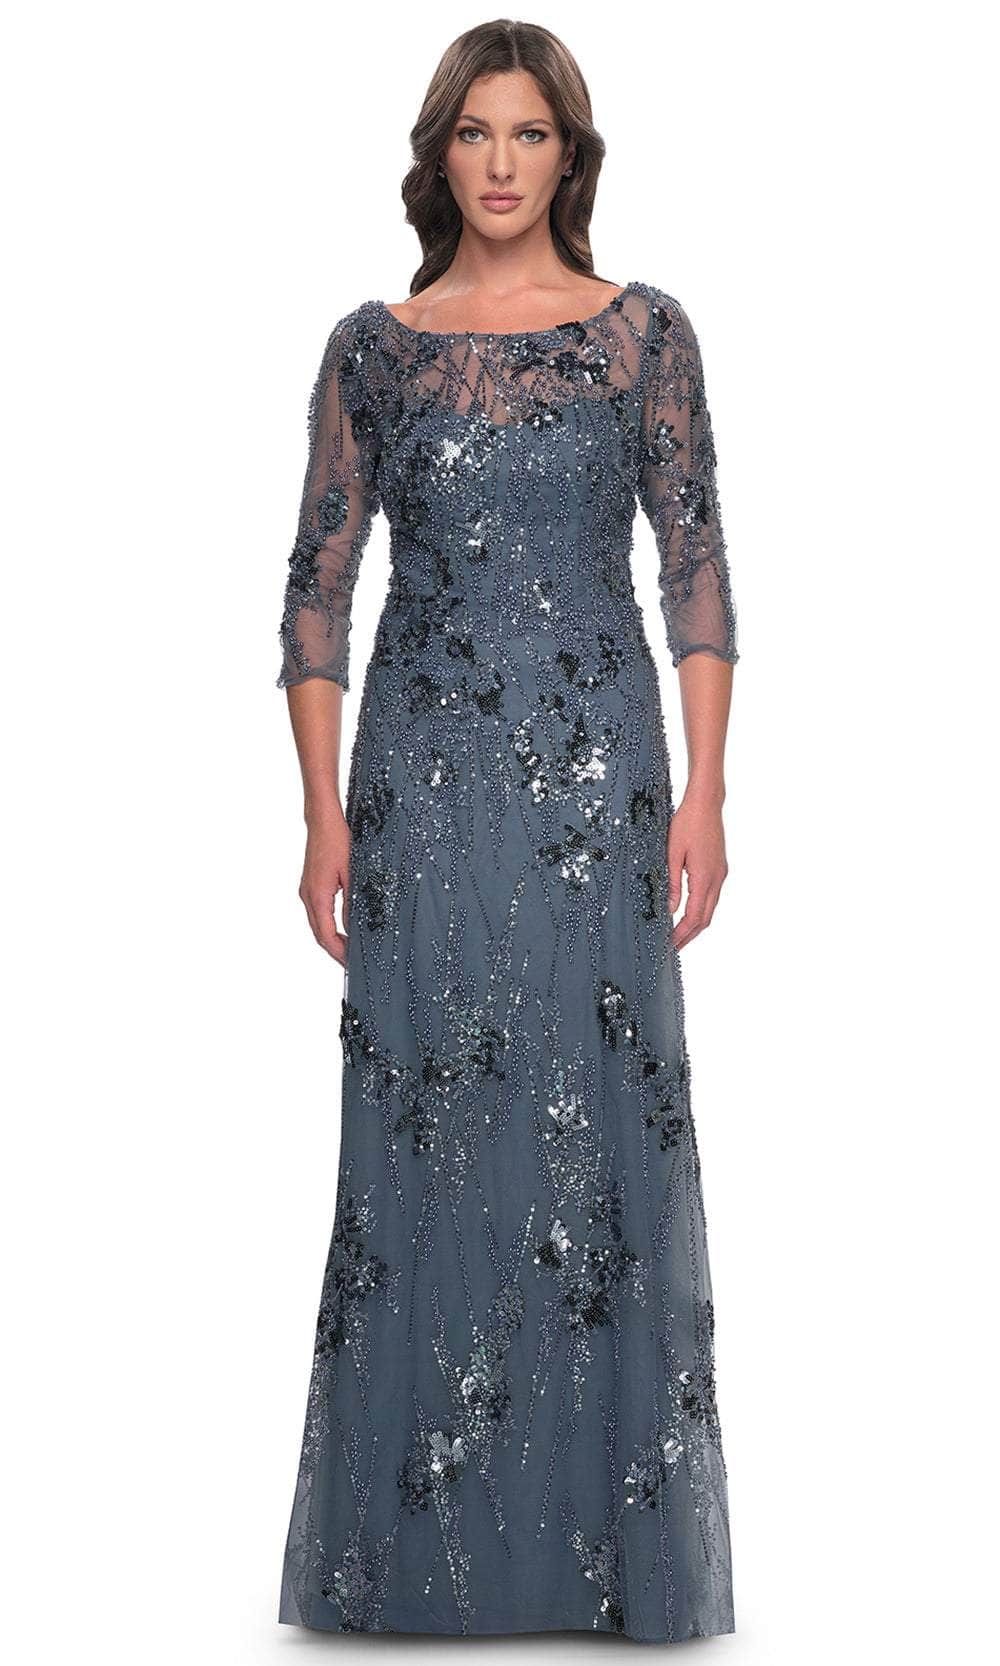 Image of La Femme 31458 - Quarter Sleeve Rhinestone Embellished Evening Gown